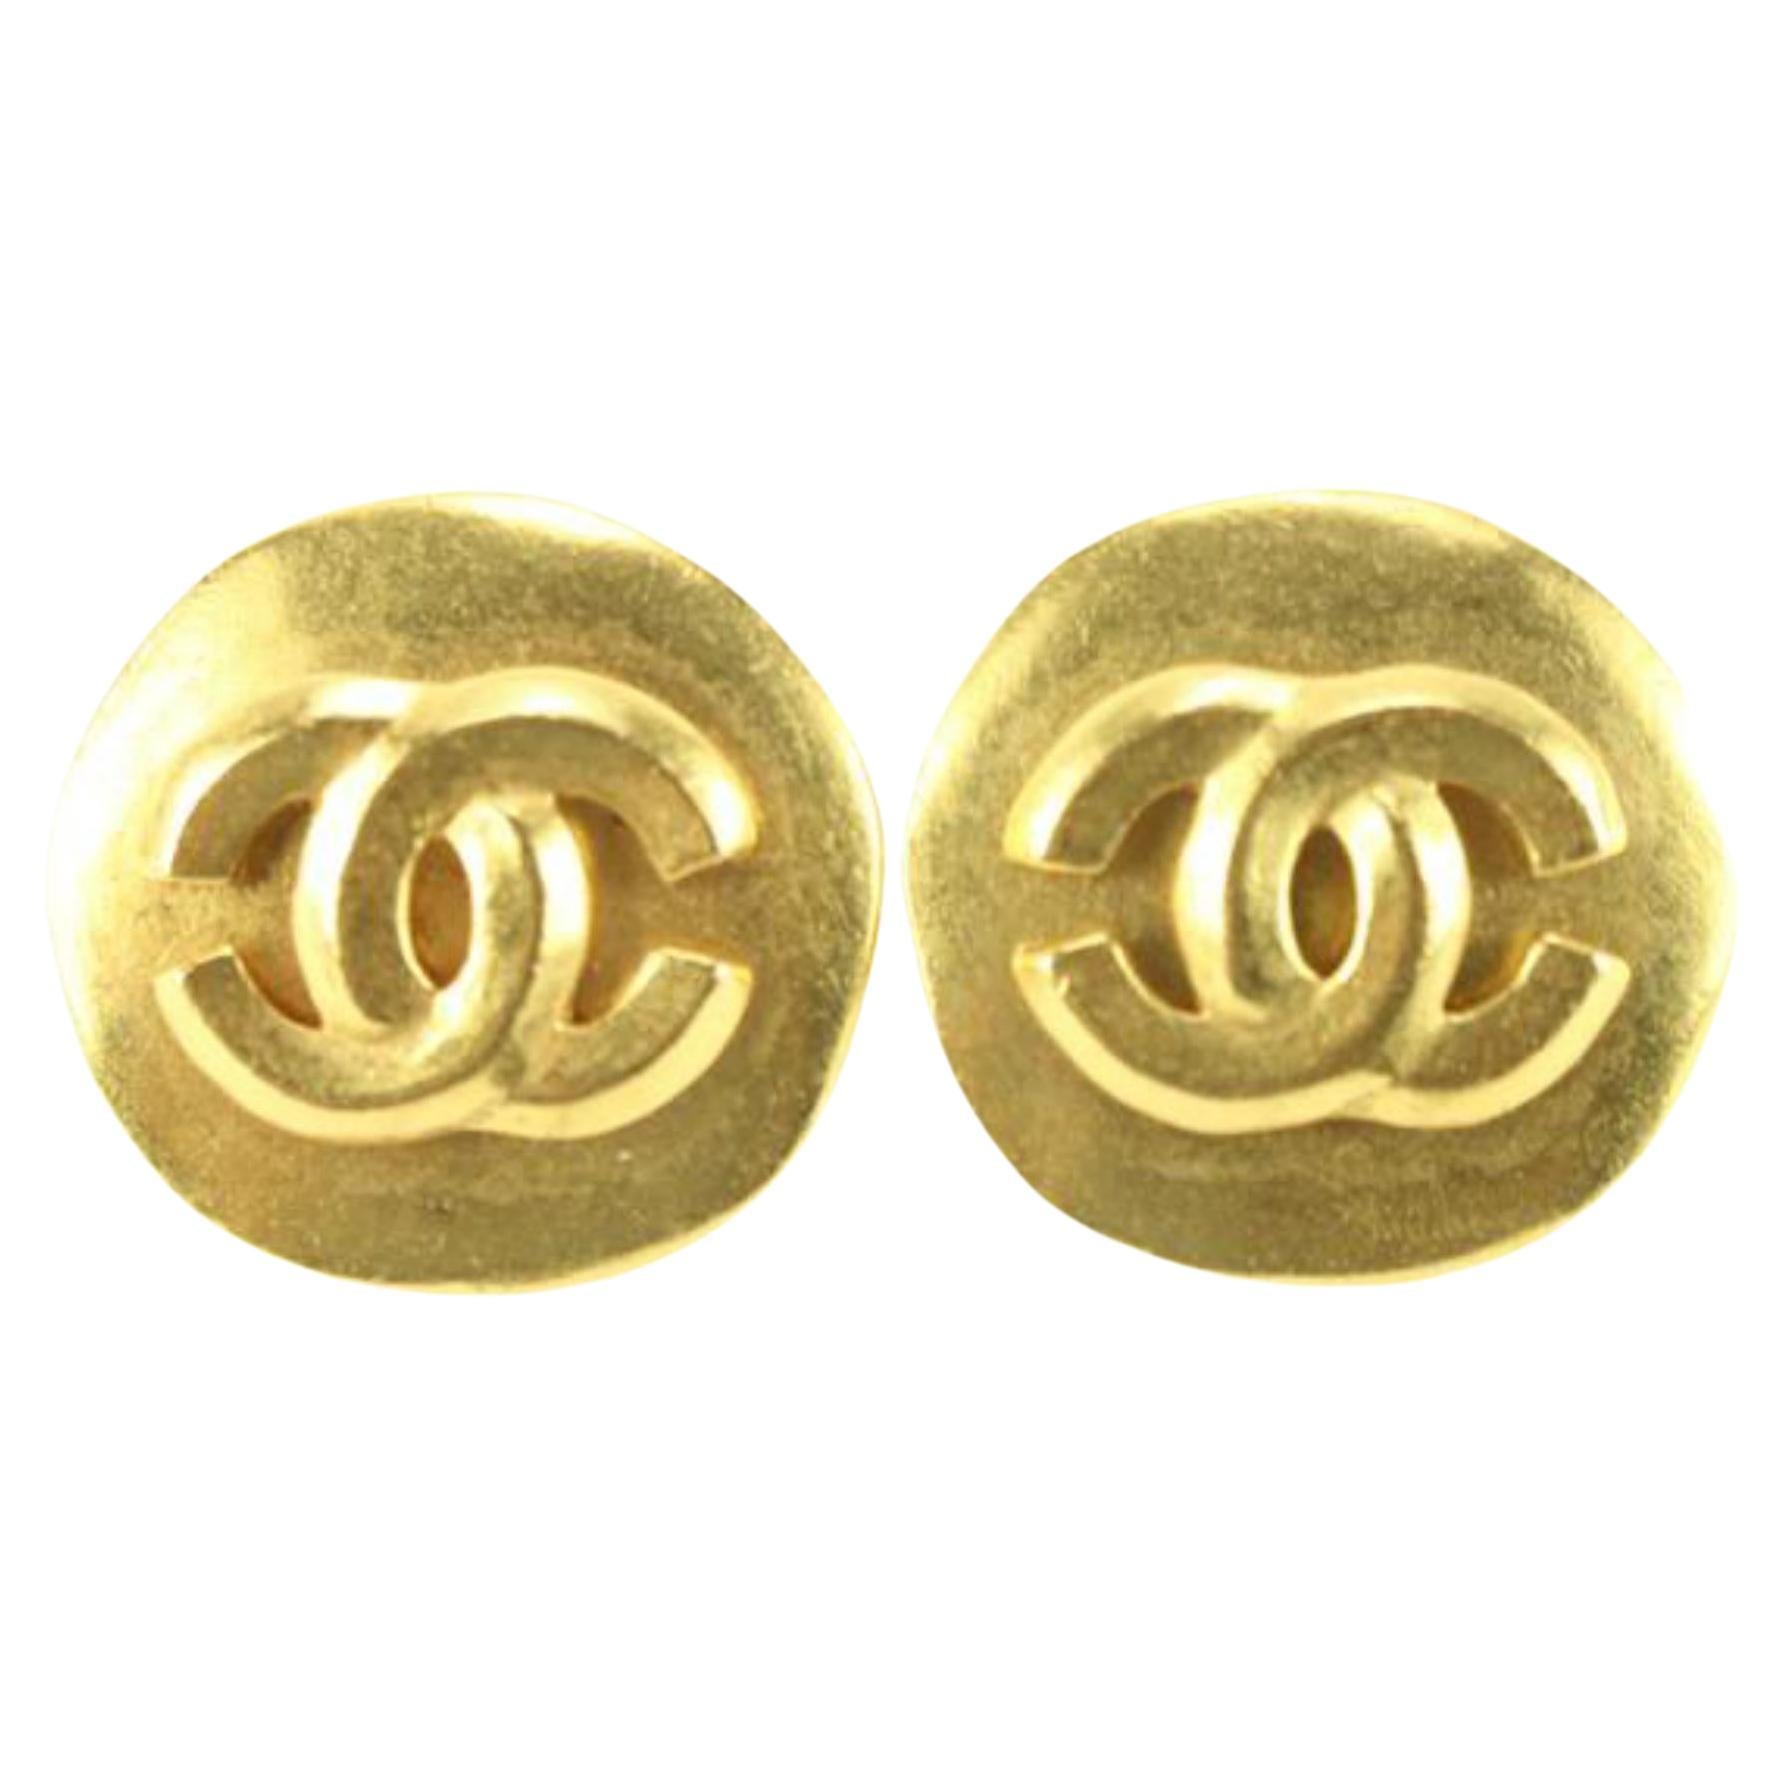 Boucles d'oreilles Chanel 96p 24k plaquées or avec logo CC rond 72cz726s